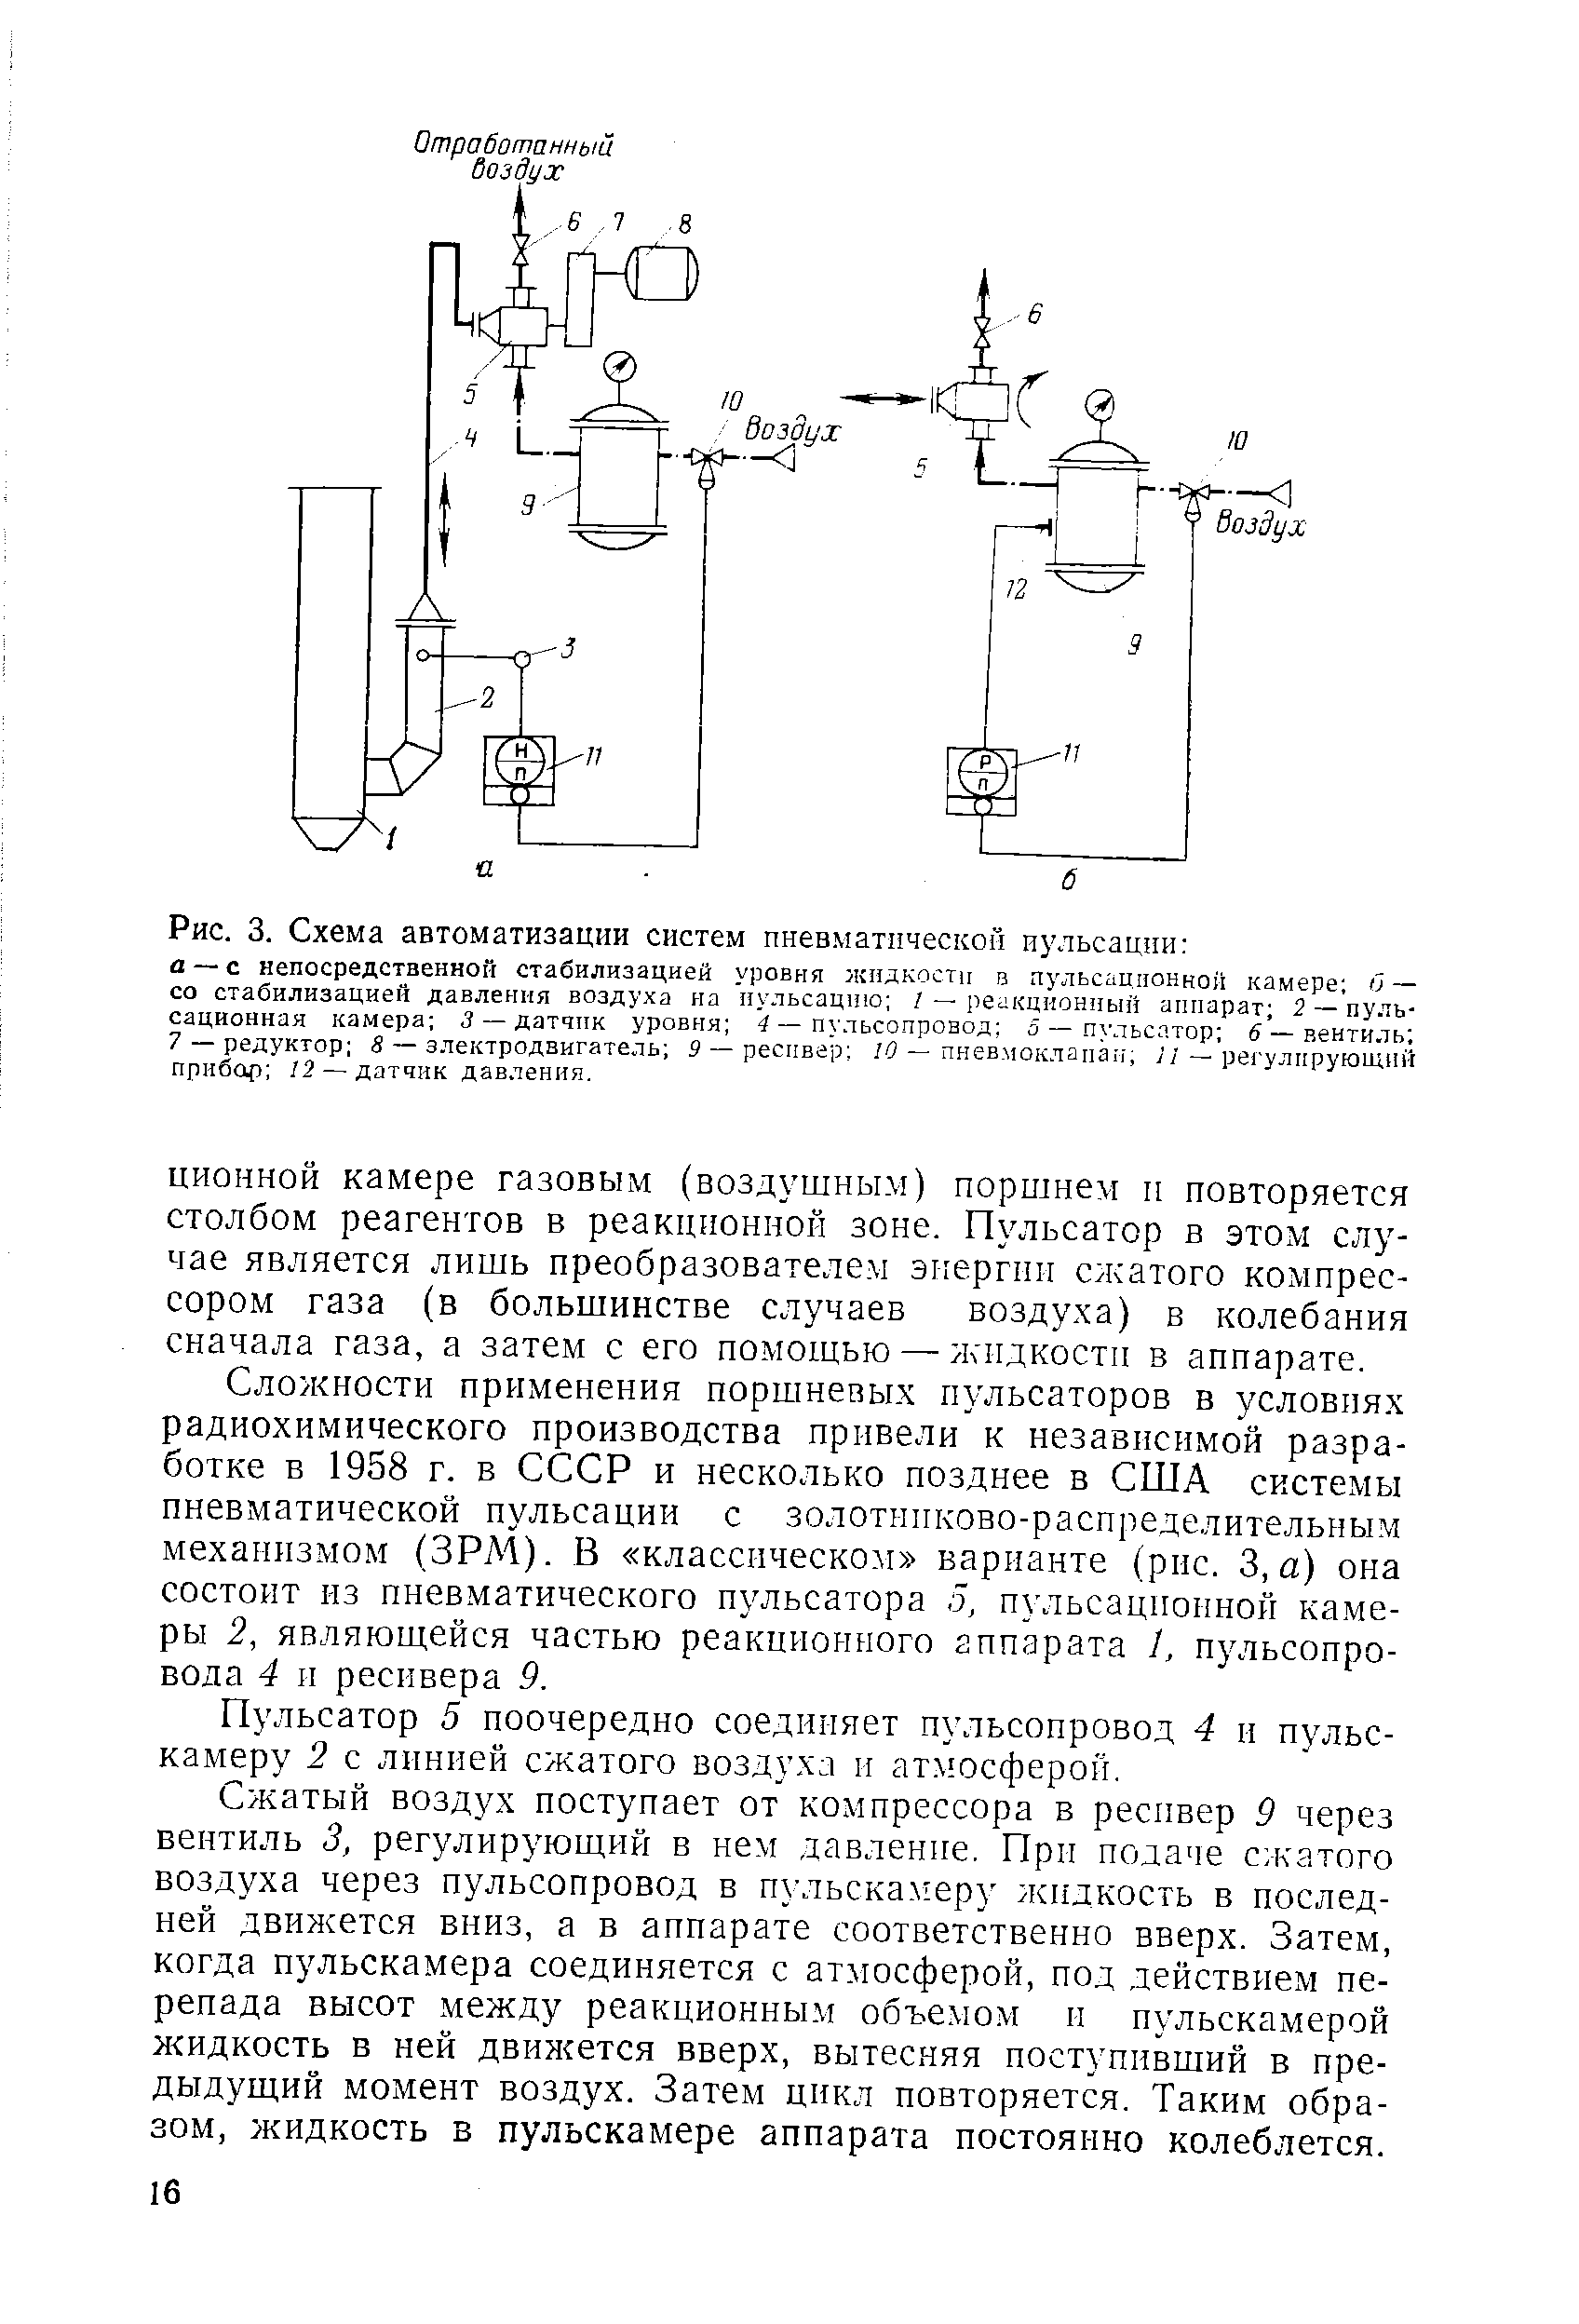 Сложности применения поршневых пульсаторов в условиях радиохимического производства привели к независимой разработке в 1958 г. в СССР и несколько позднее в США системы пневматической пульсации с золотниково-распреде,лительным механизмом (ЗРМ). В классическом варианте (рис. 3, а) она состоит из пневматического пульсатора 5, пульсационной камеры 2, являющейся частью реакционного аппарата 1, пульсопровода 4 и ресивера 9.